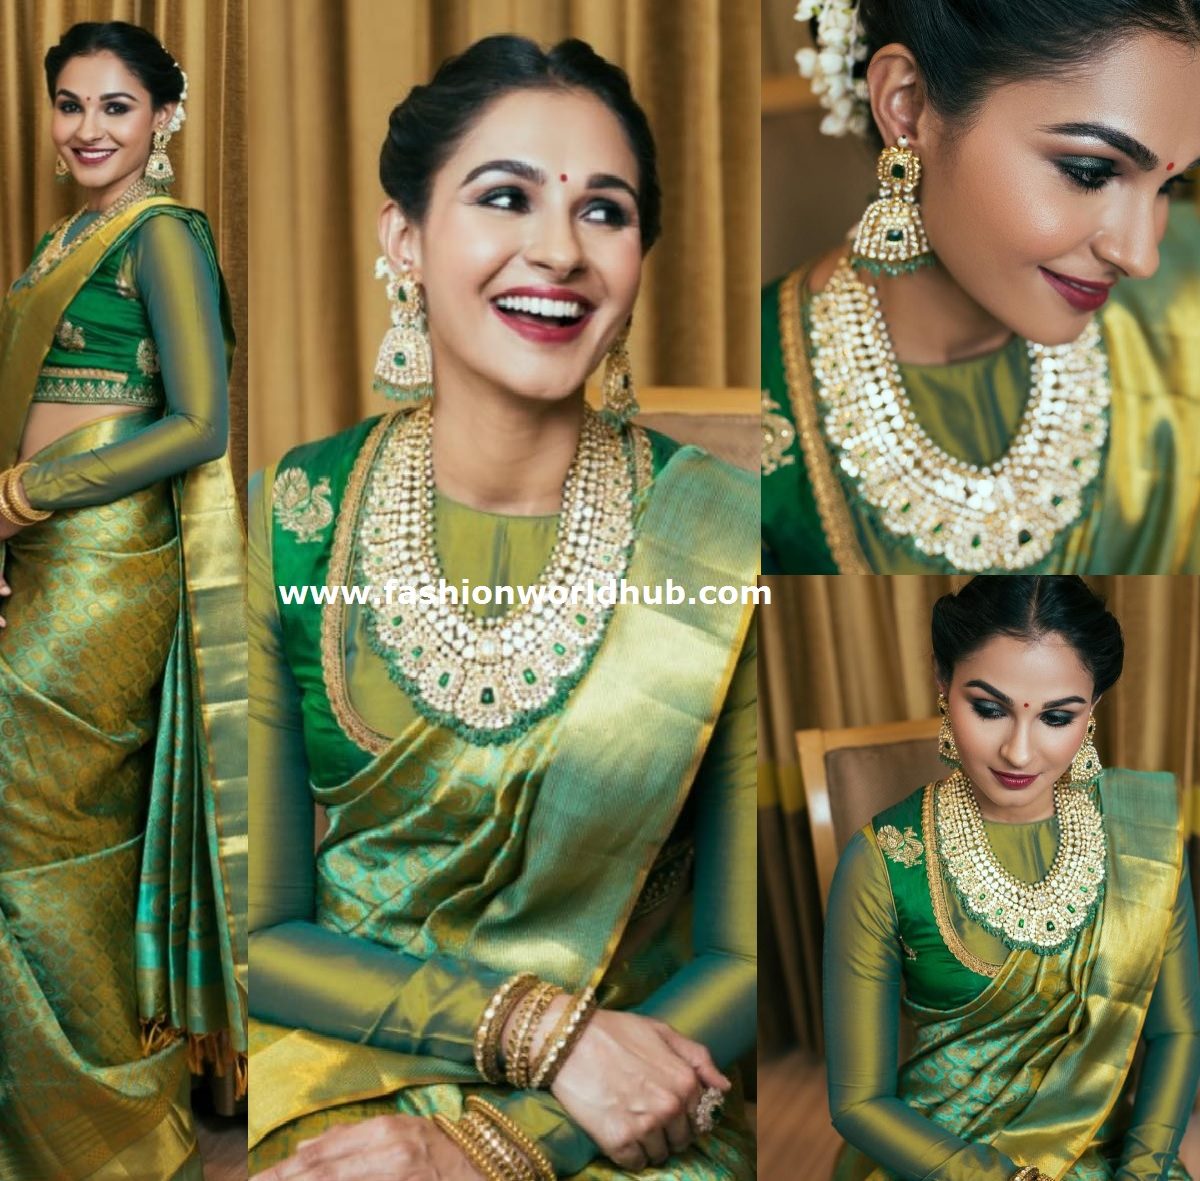 Shamna Kasim in a Traditional saree! | Fashionworldhub